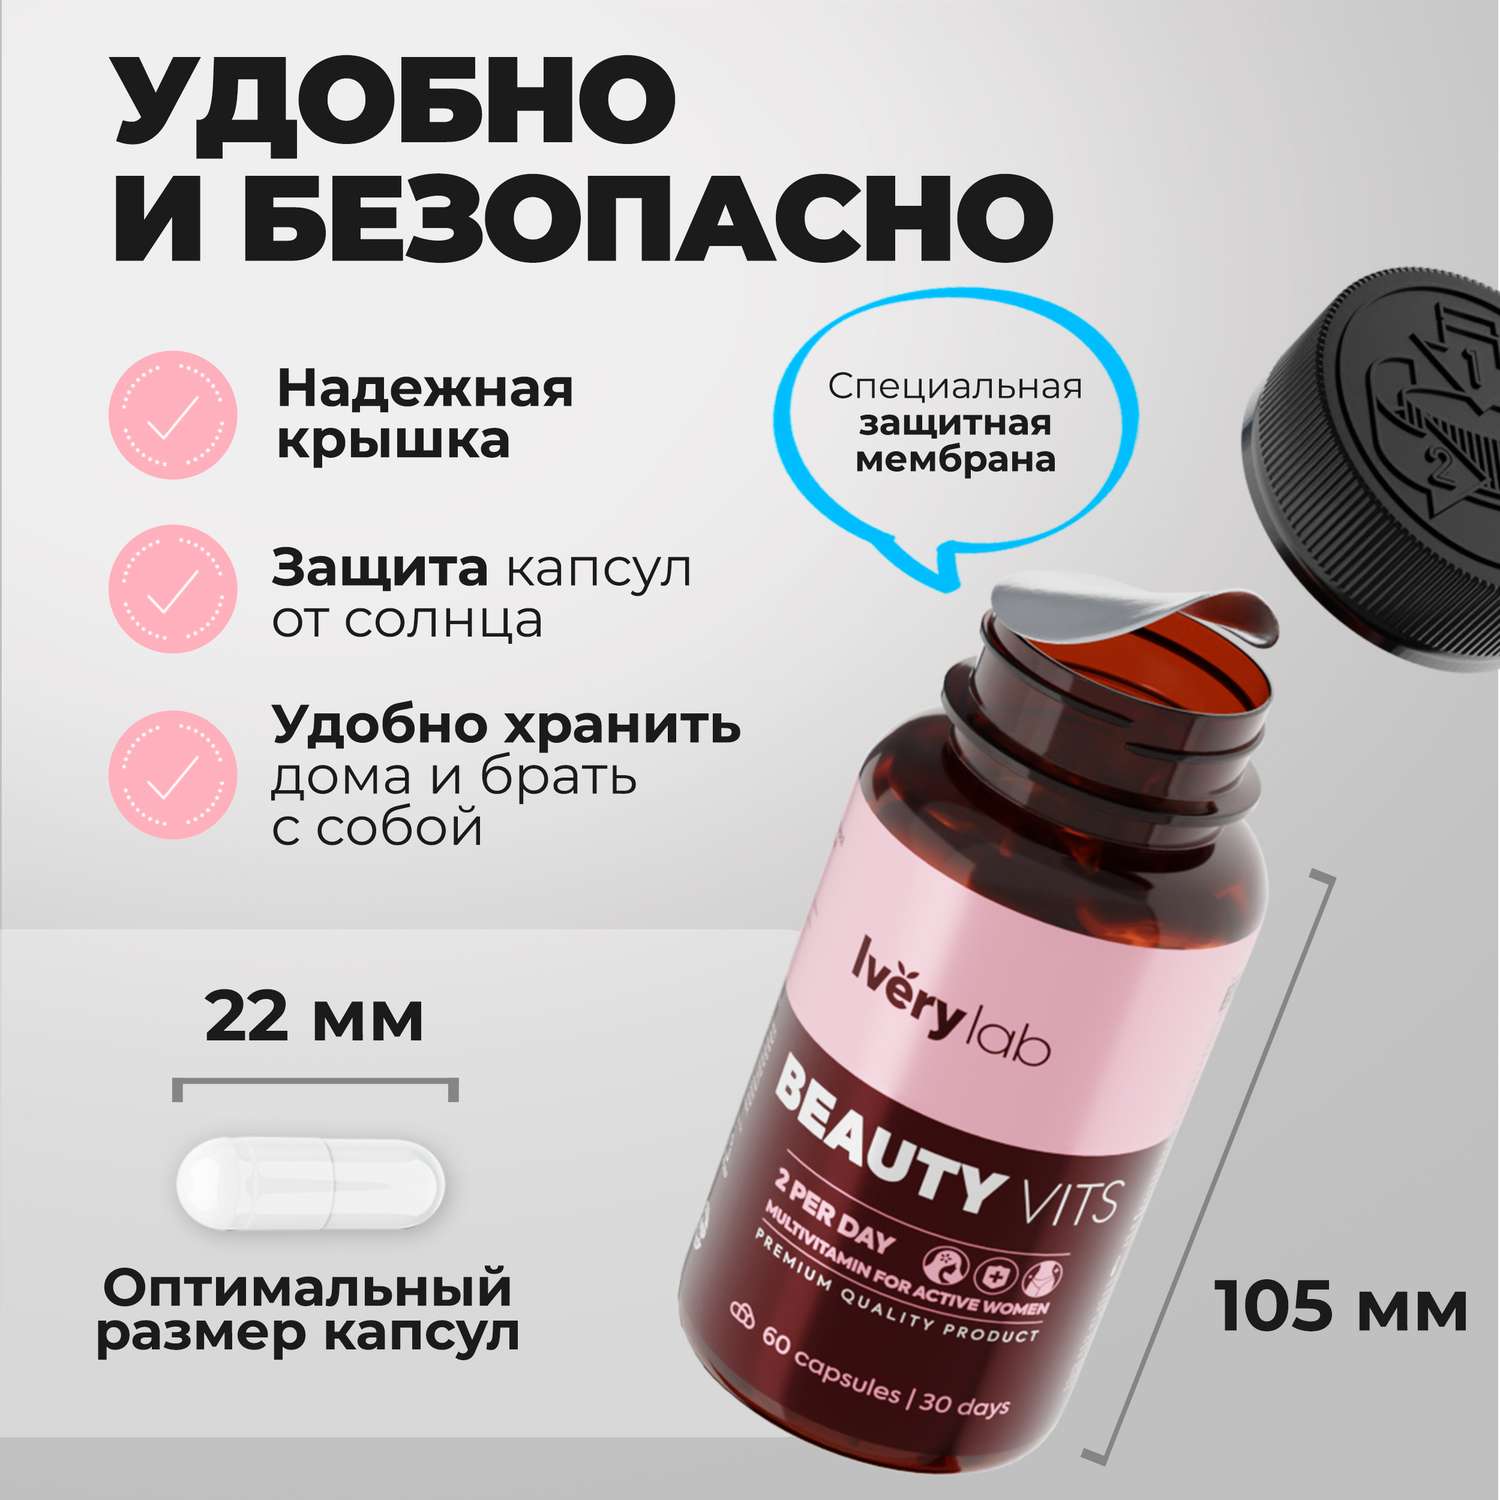 БАД Iverylab Женский витаминно-минеральный комплекс для красоты и здоровья Beauty Vits - фото 6